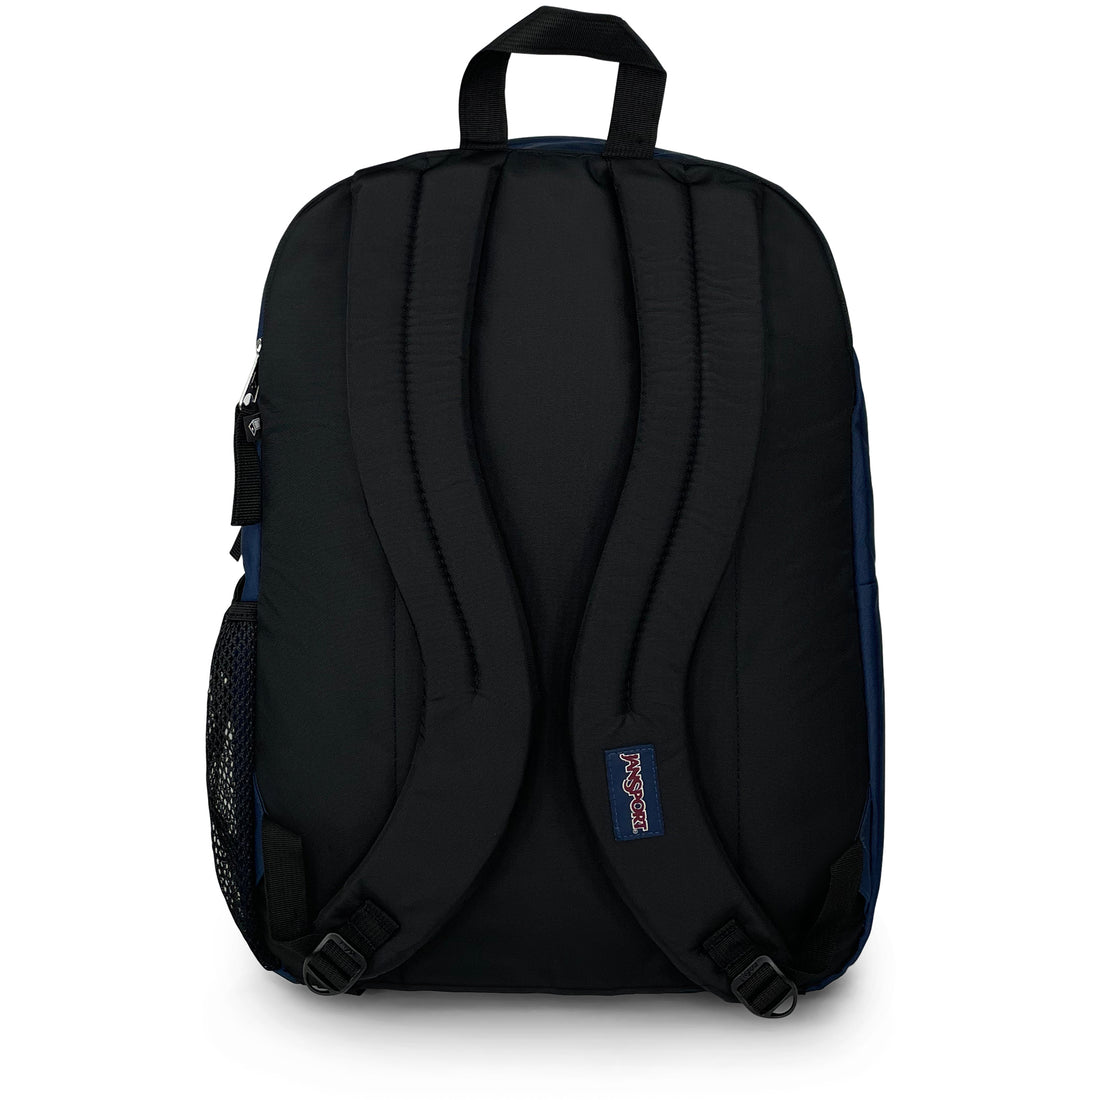 Big Student Backpack-Backpack-Jansport-Navy-SchoolBagsAndStuff